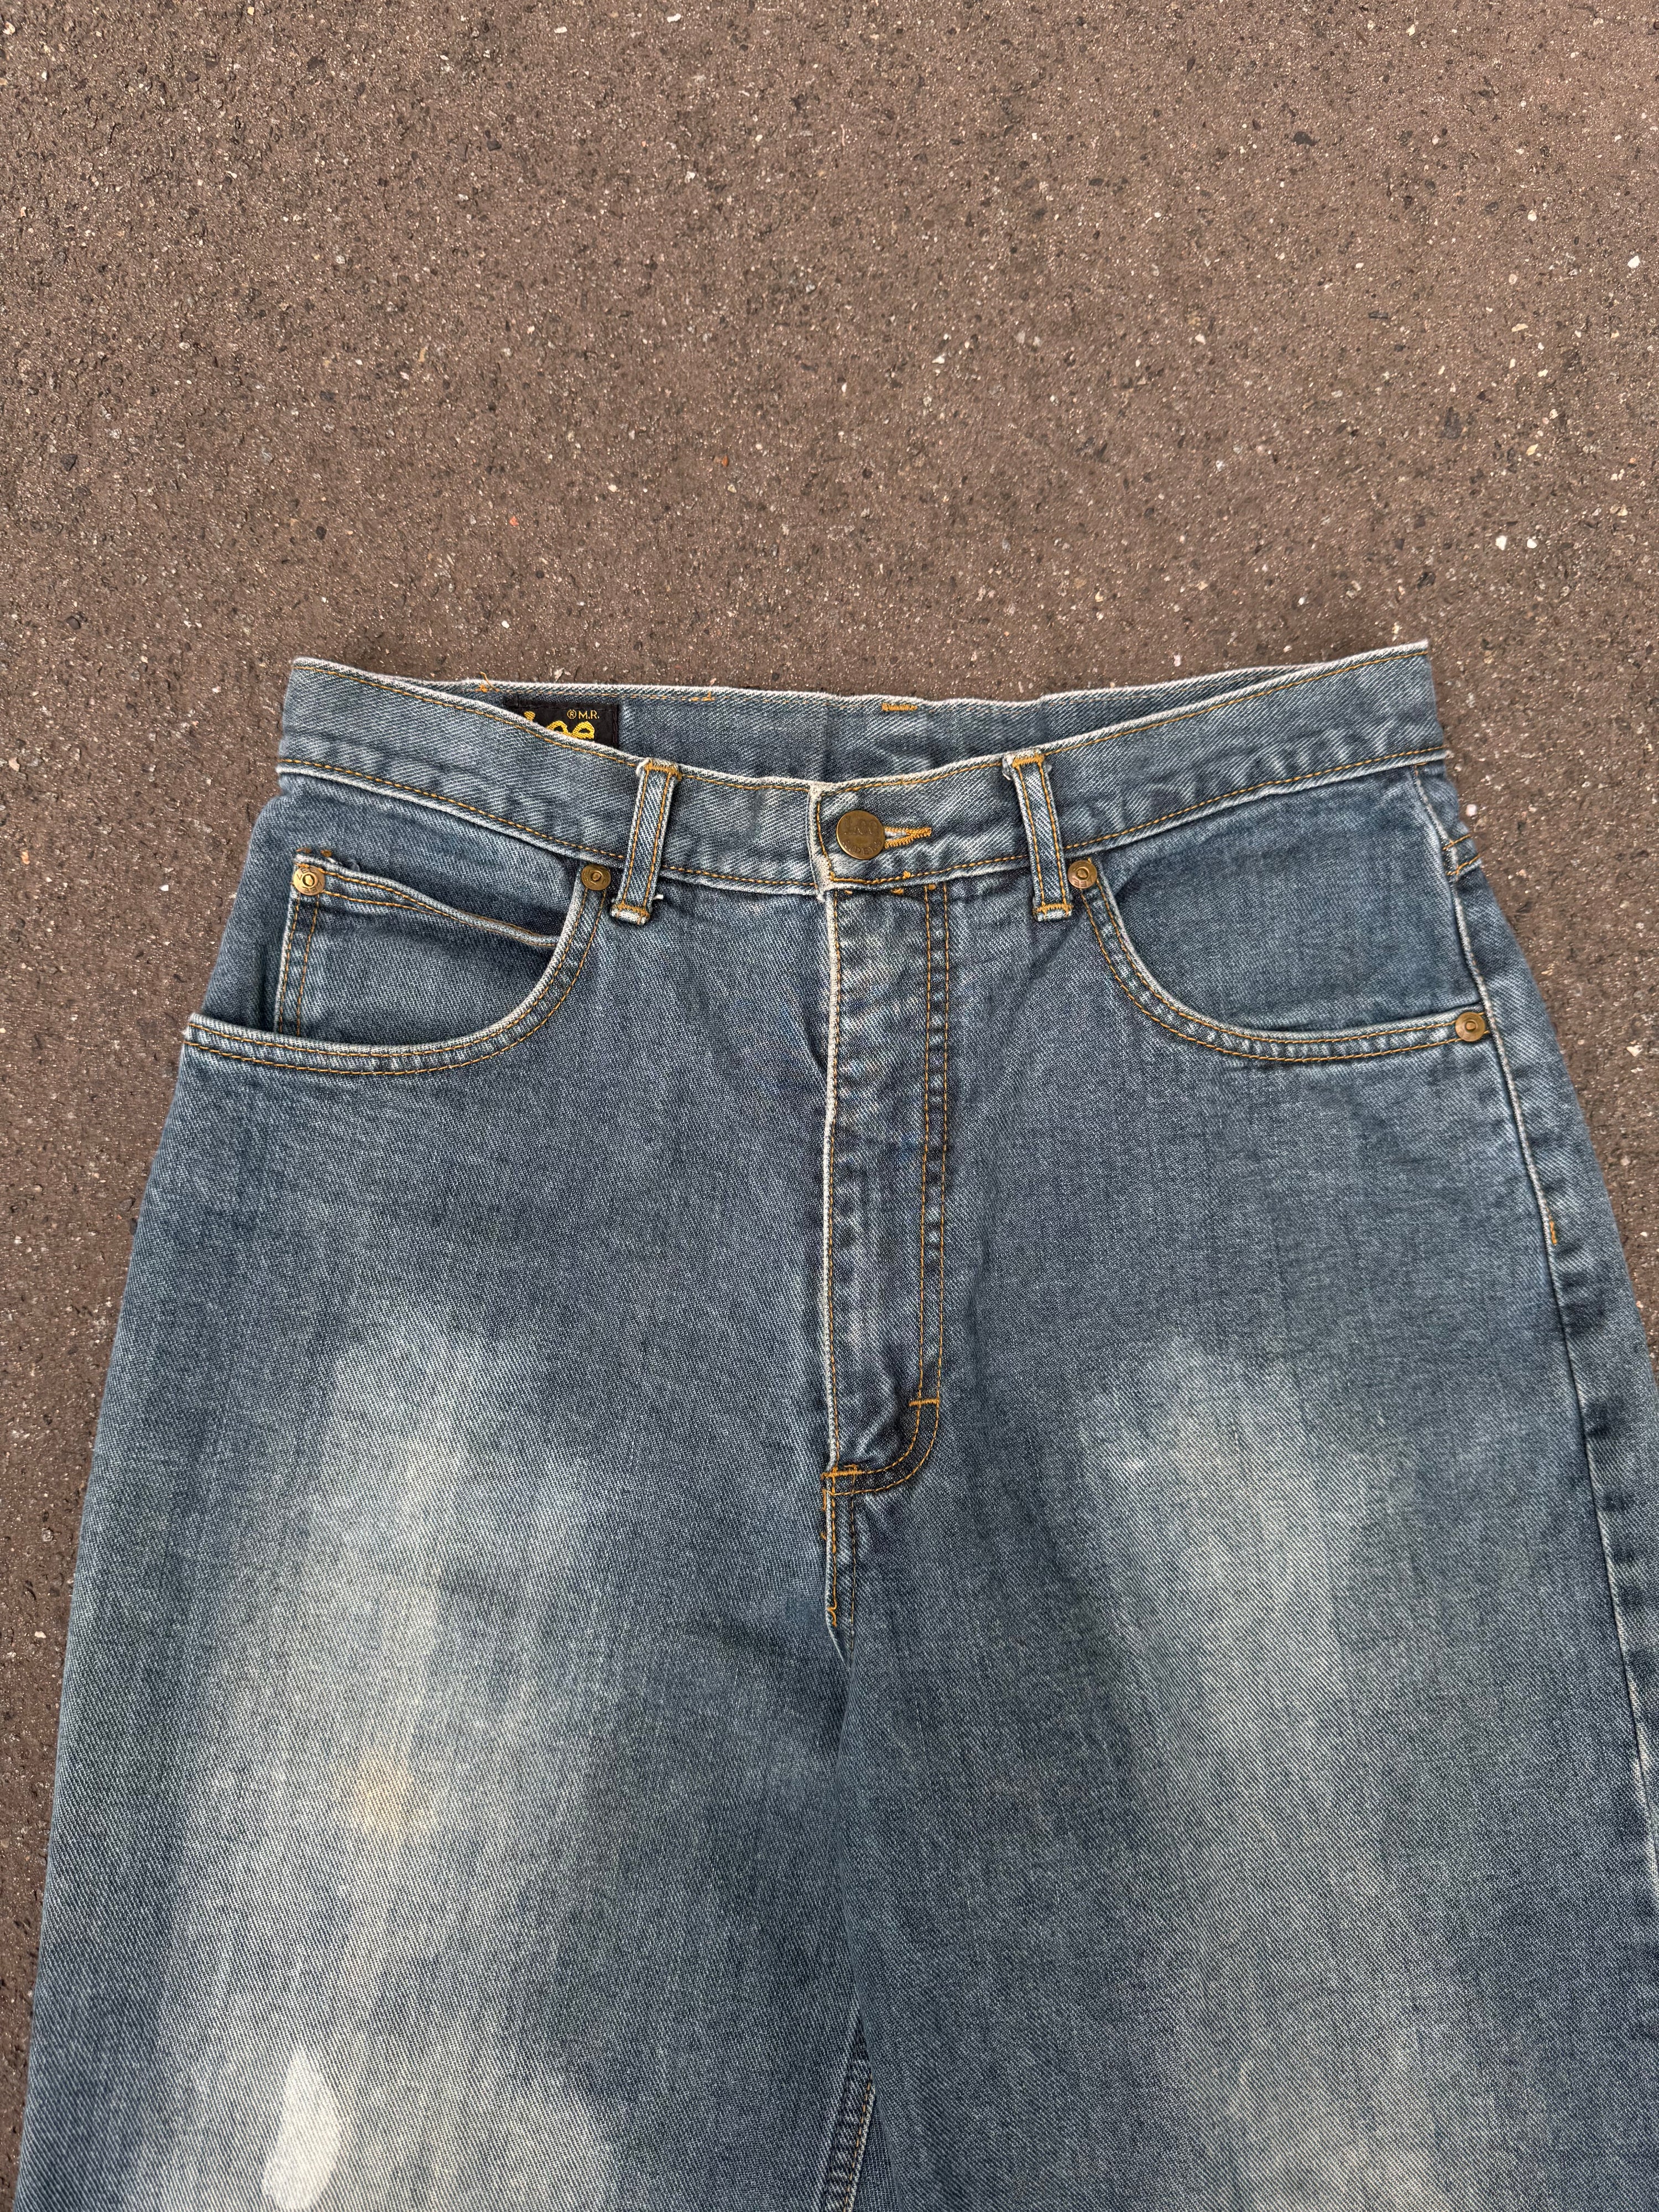 Vintage 90s Lee Wide Leg Baggy Denim Jeans Hos Highwaisted (30)